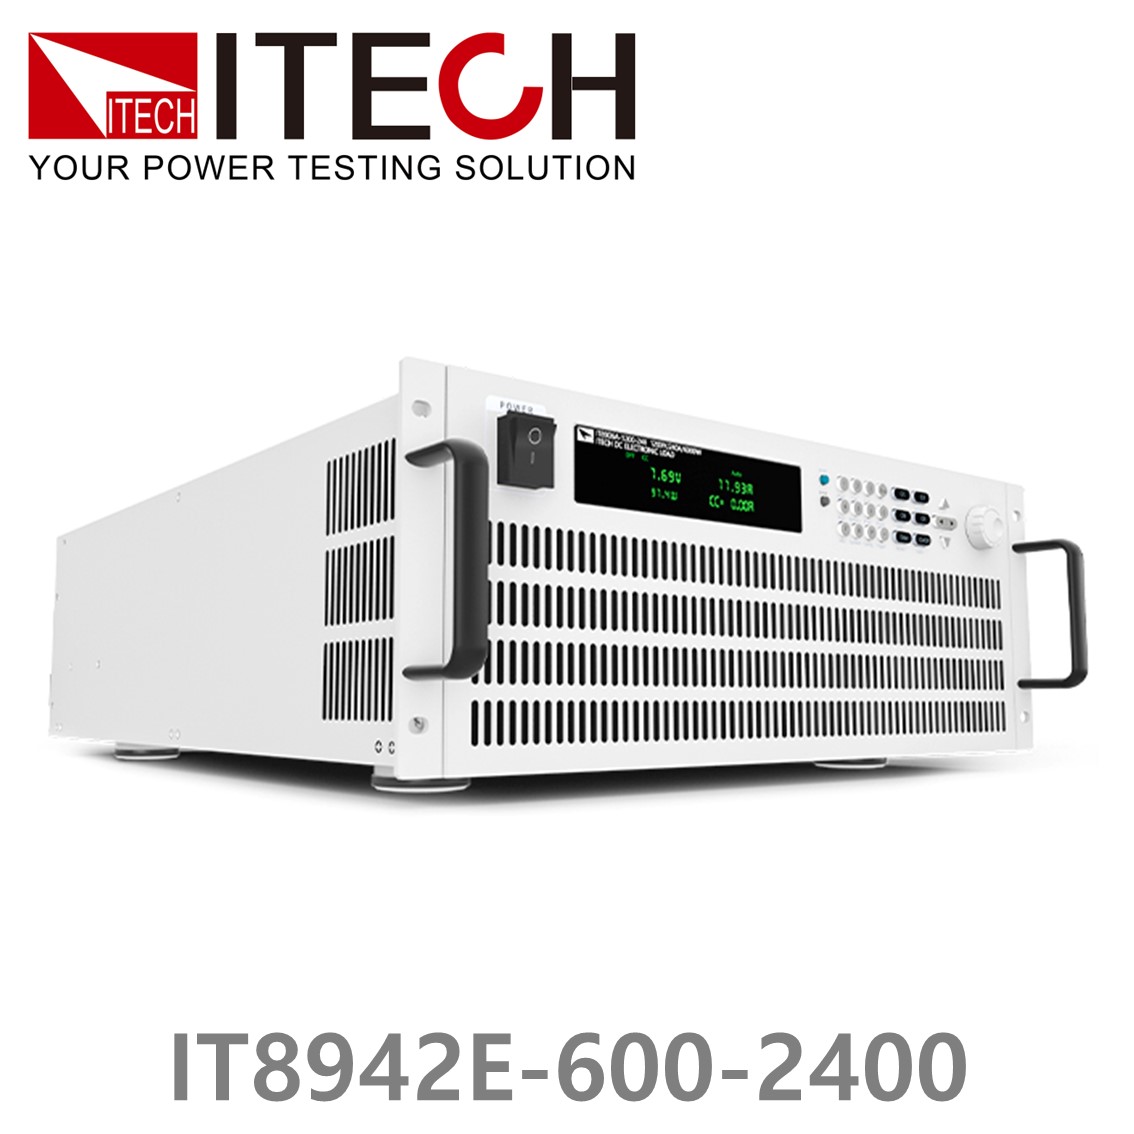 [ ITECH ] IT8942E-600-2400  고성능 고전력 DC 전자로드 600V/2400A/42kW (37U)